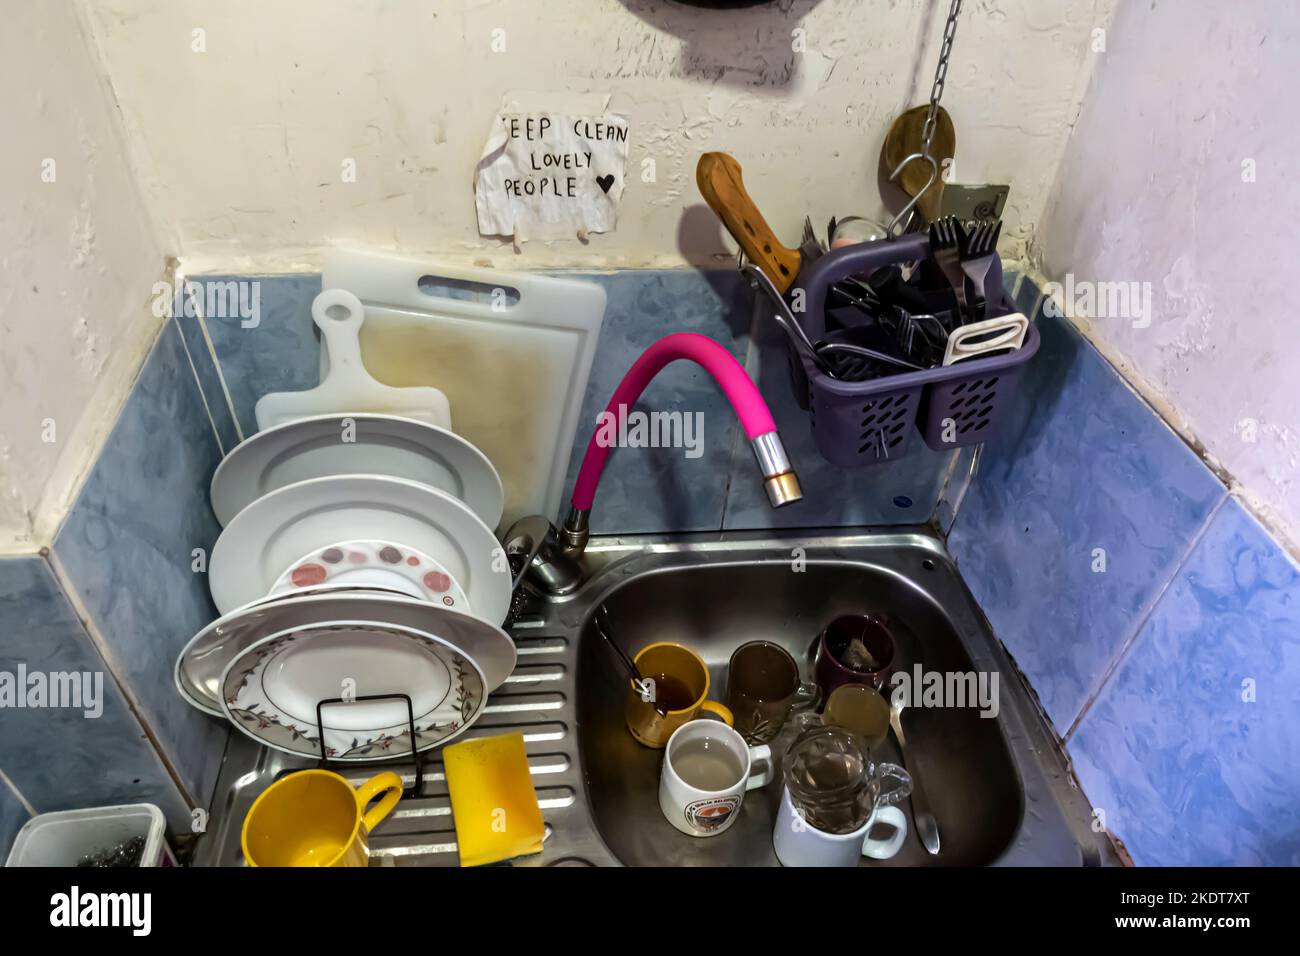 Dreckiges Geschirr, ungewaschen im Waschbecken mit einem Schild „Keep clean lovely people“. Thema - Gemeinschaftsküche, Gemeinschaftsraum. Stockfoto